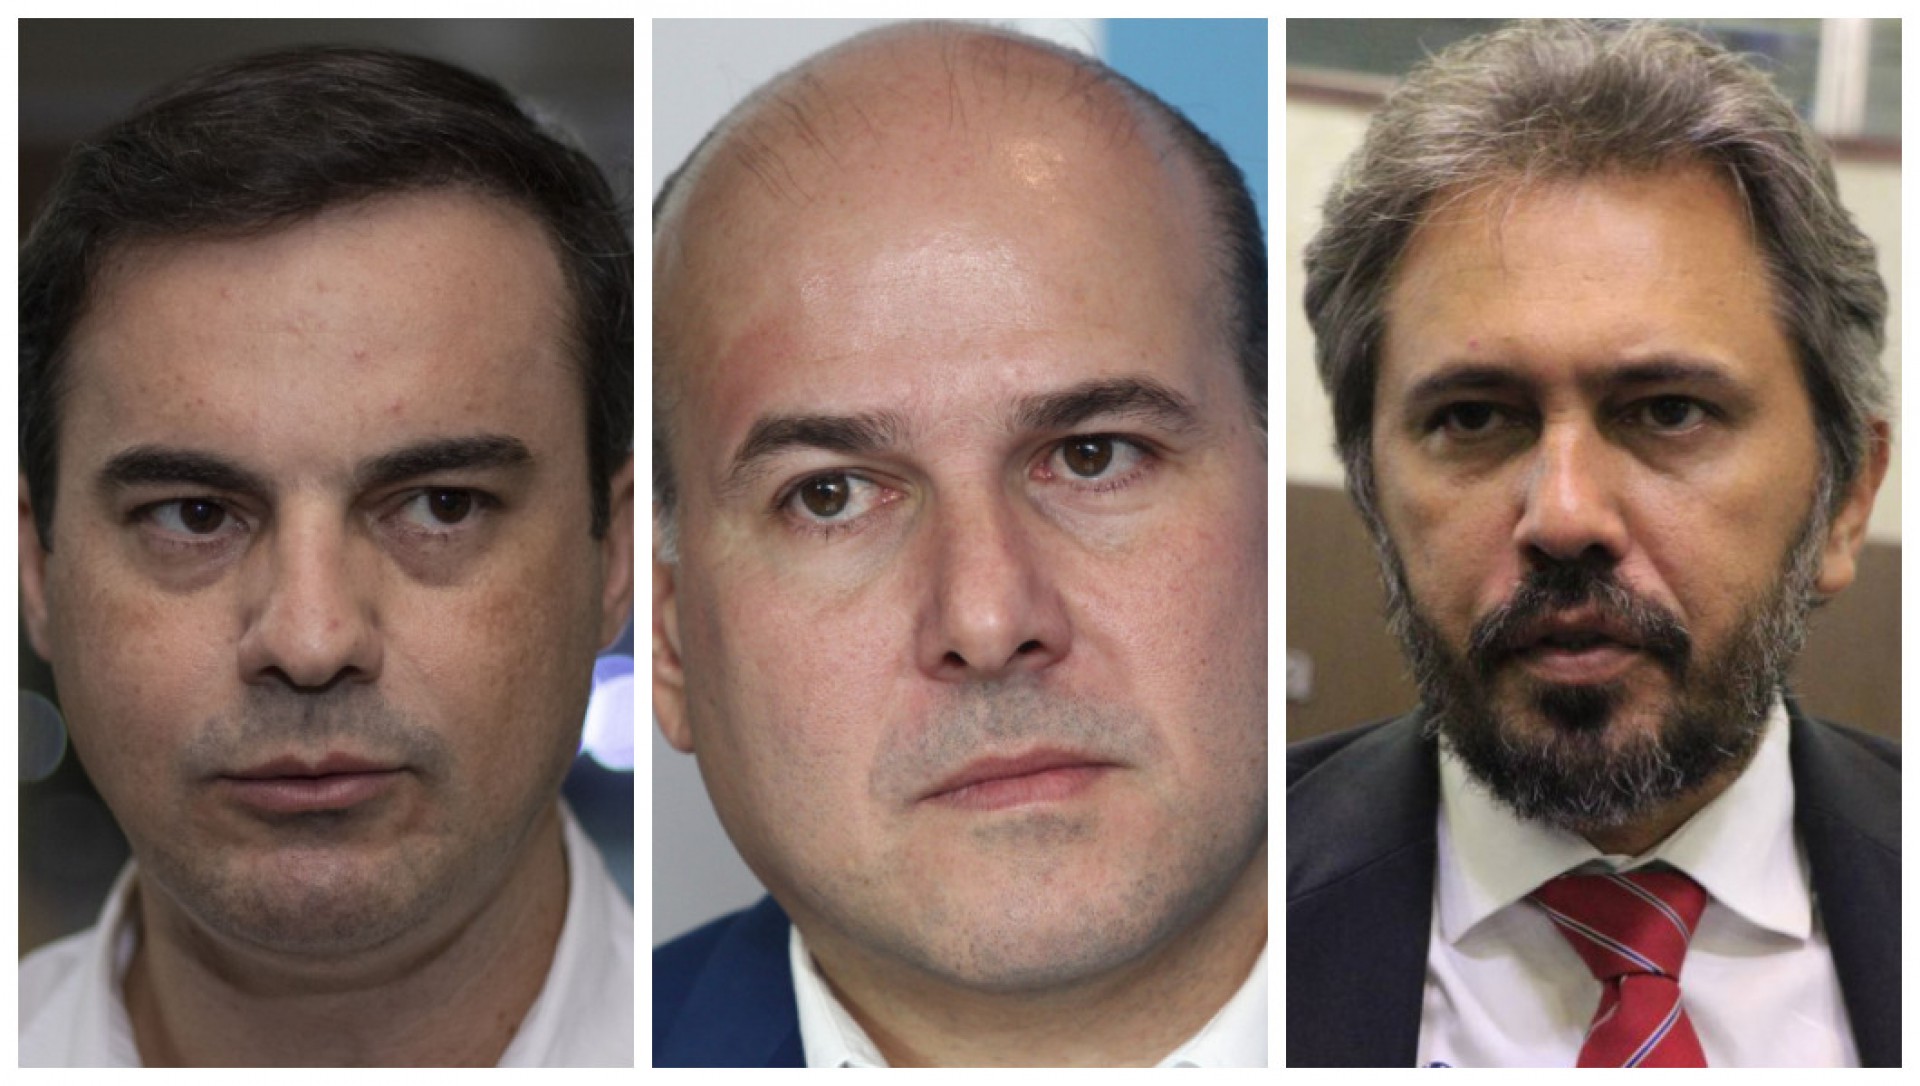 Capitão Wagner (UB), Roberto Cláudio (PDT) e Elmano Freitas (PT) lideram as intenções para o Governo do Ceará. (Foto: Samuel Setubal - Fábio Lima - Mauri Melo/O POVO)